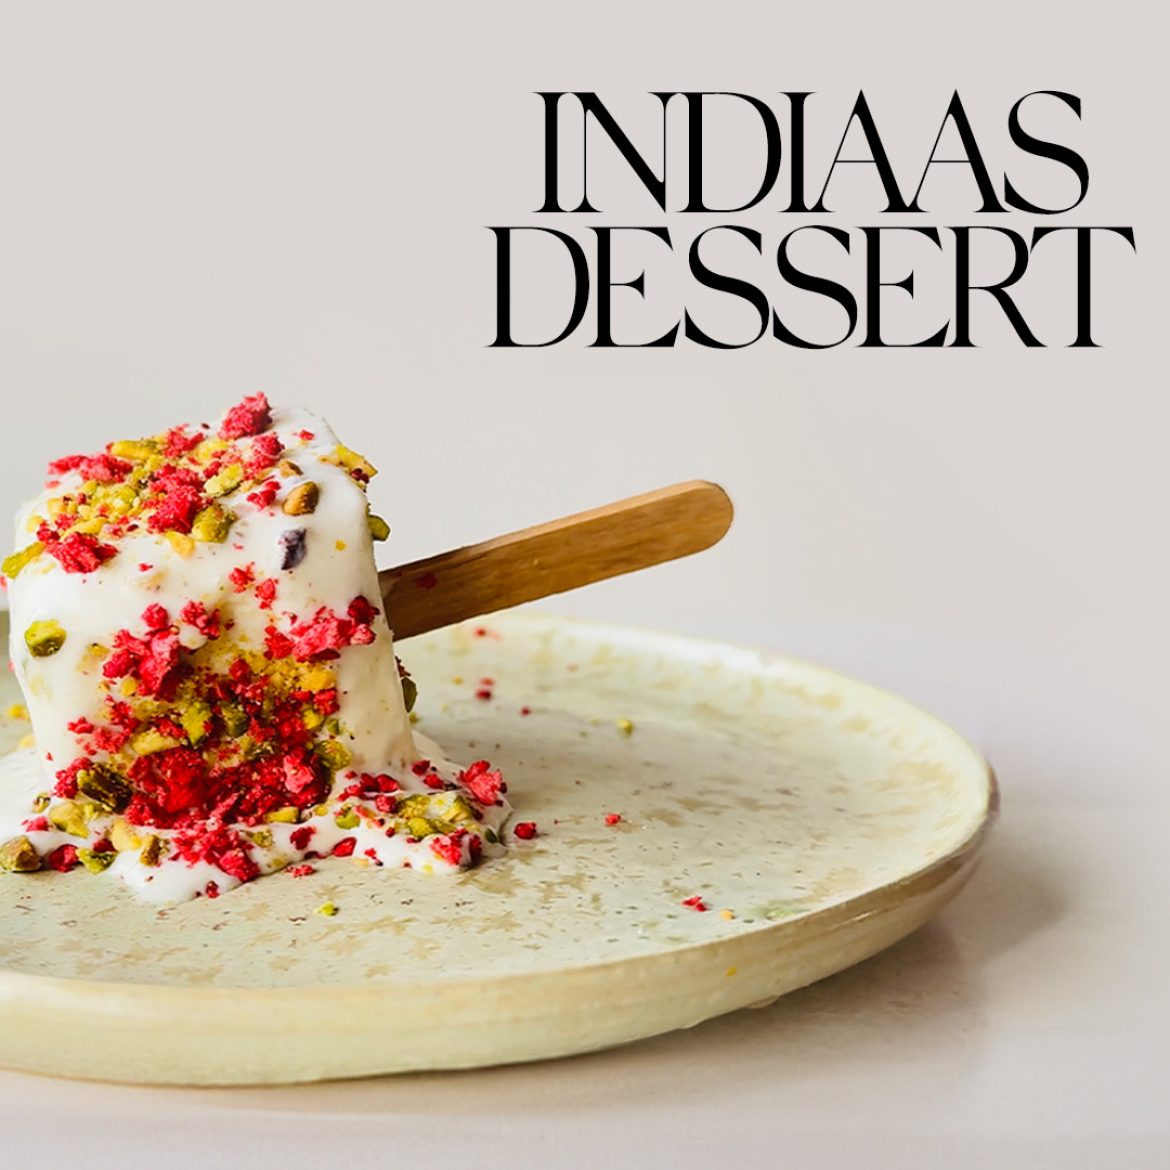 Zoet én verfrissend: maak in een handomdraai dit heerlijke Indiase ijsdessert